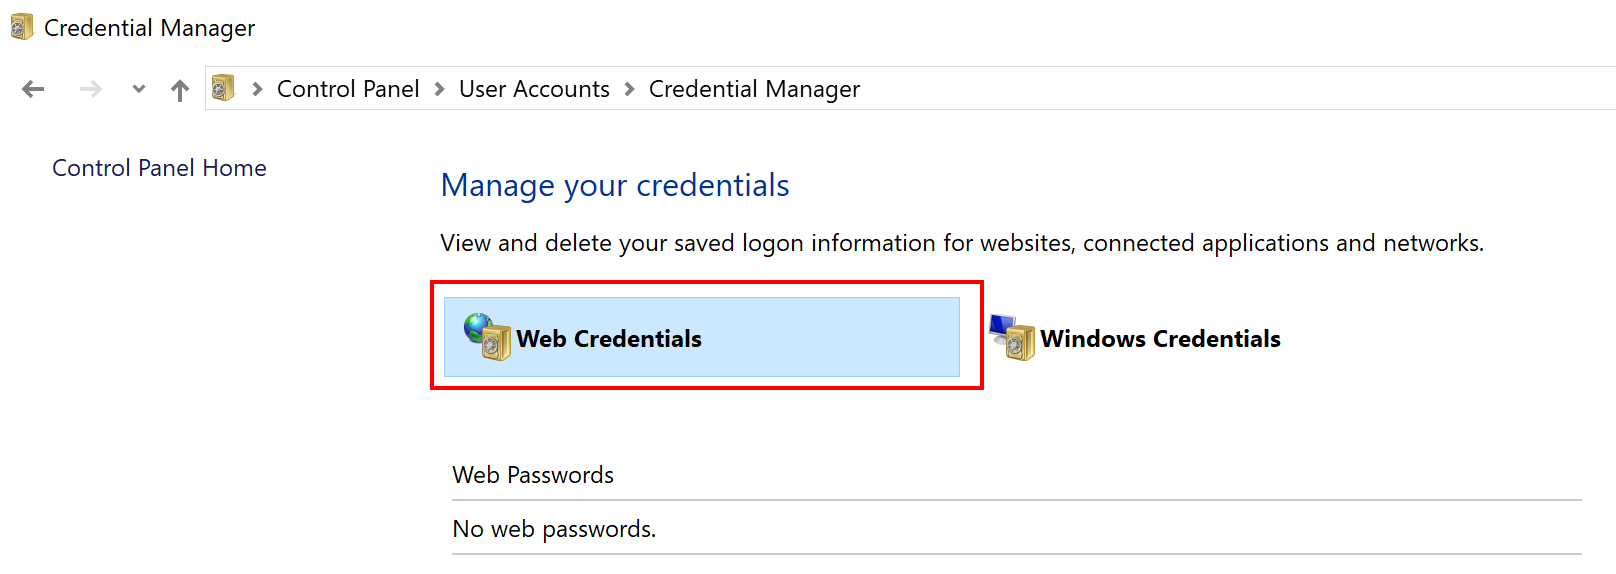 click Web Credentials